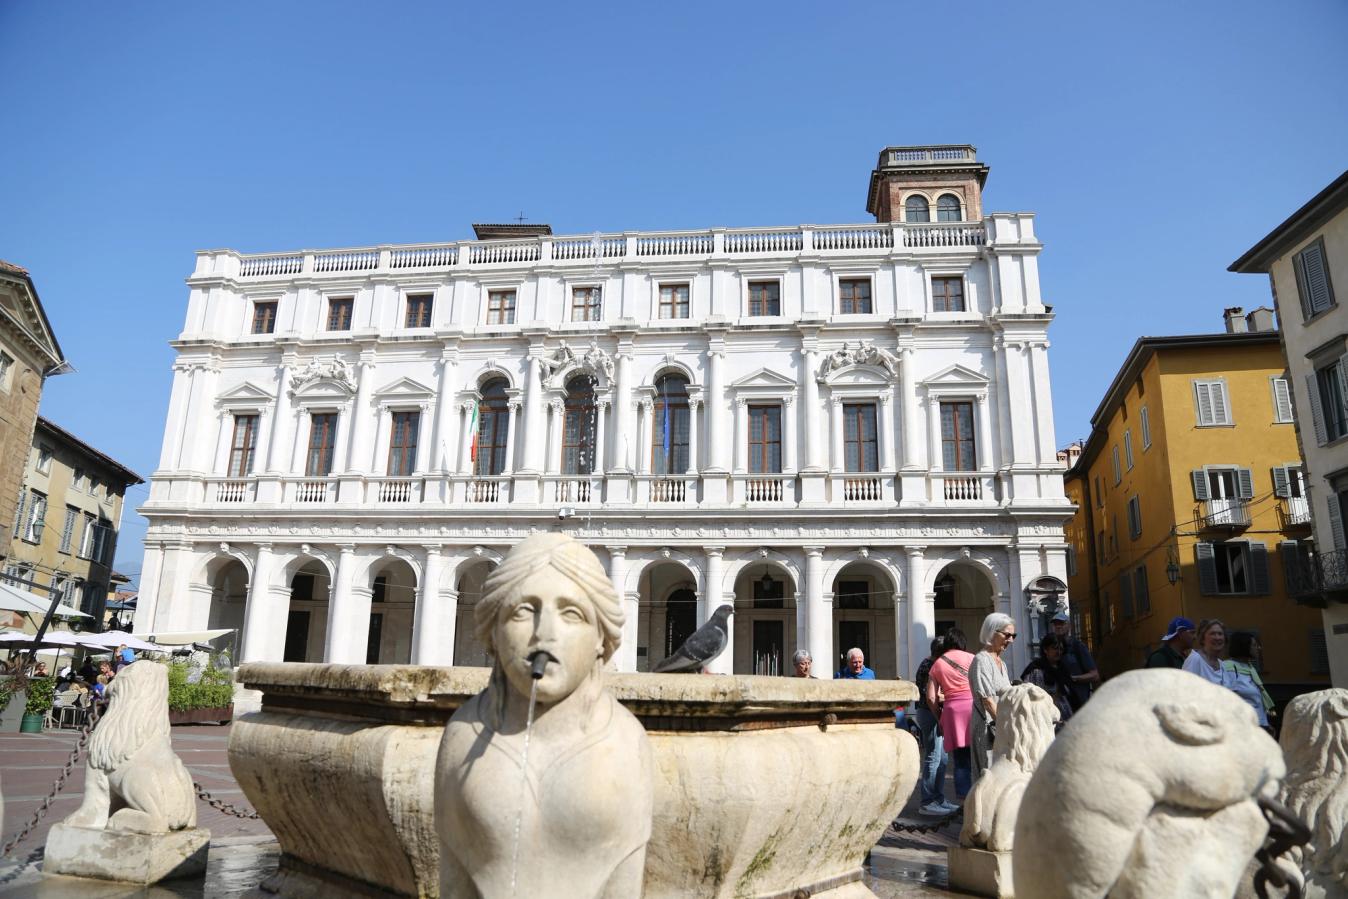 The Palazzo Nuovo overlooks the Piazza Vecchia in Bergamo's old town.